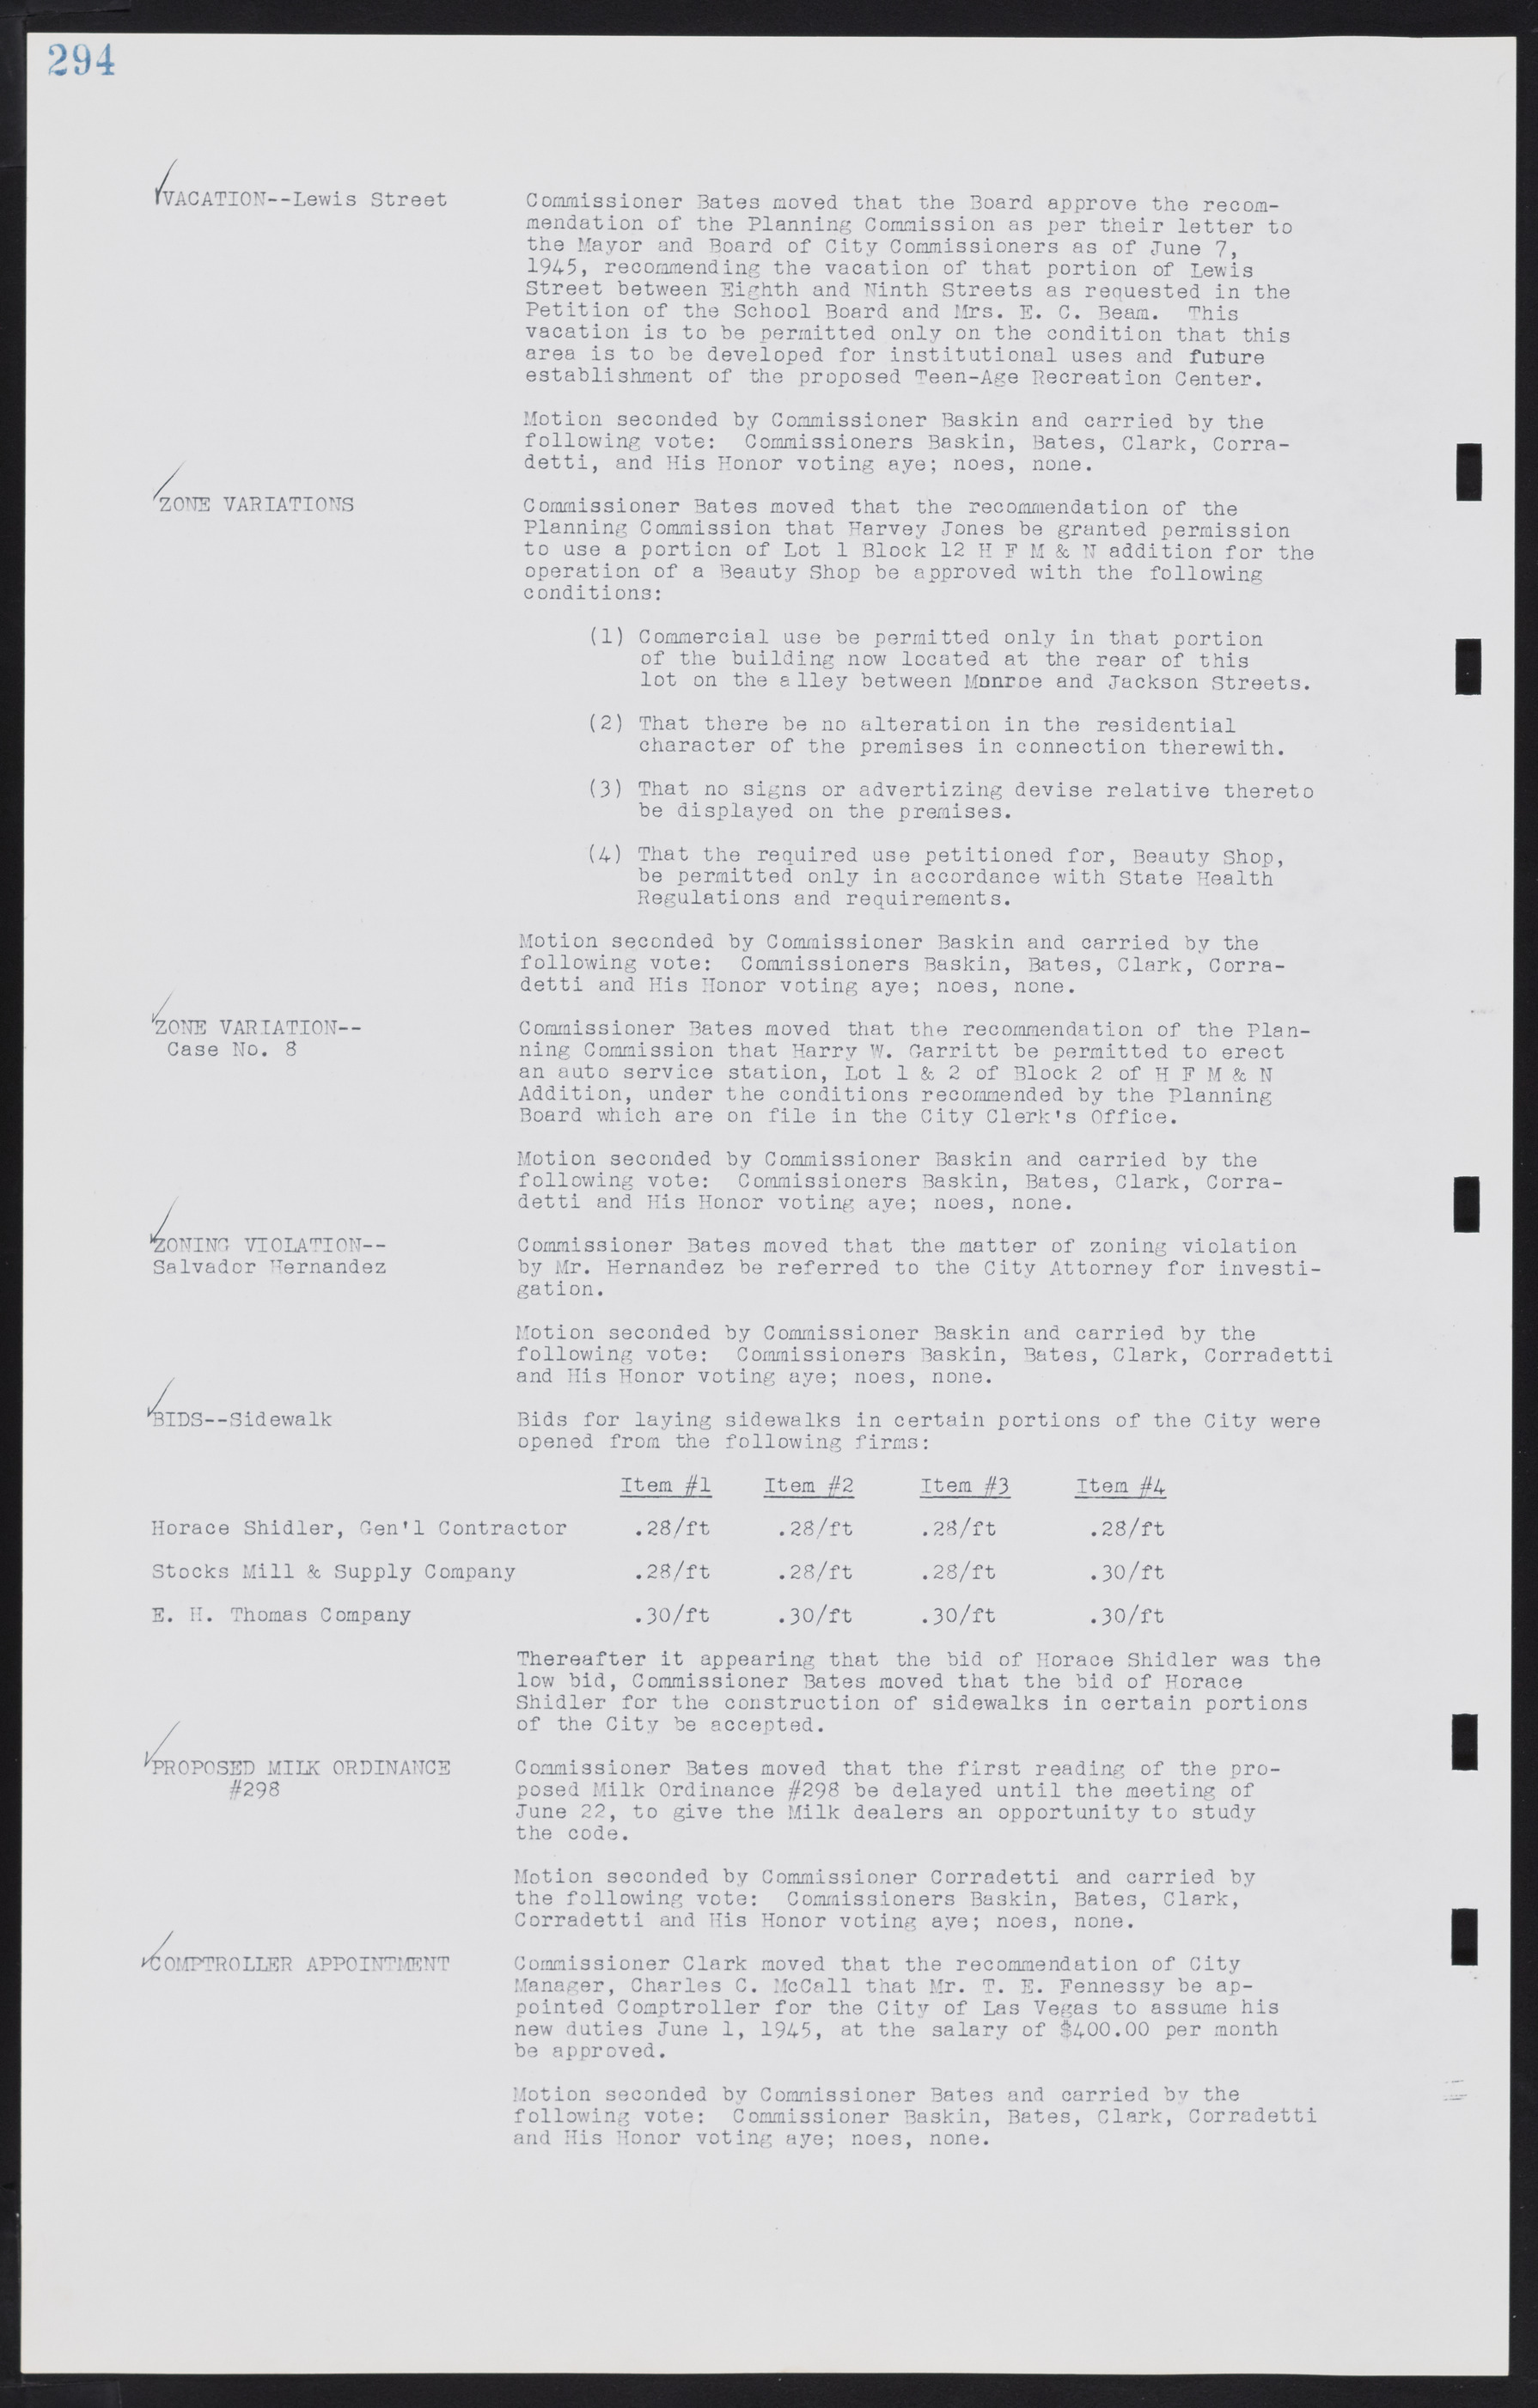 Las Vegas City Commission Minutes, August 11, 1942 to December 30, 1946, lvc000005-316